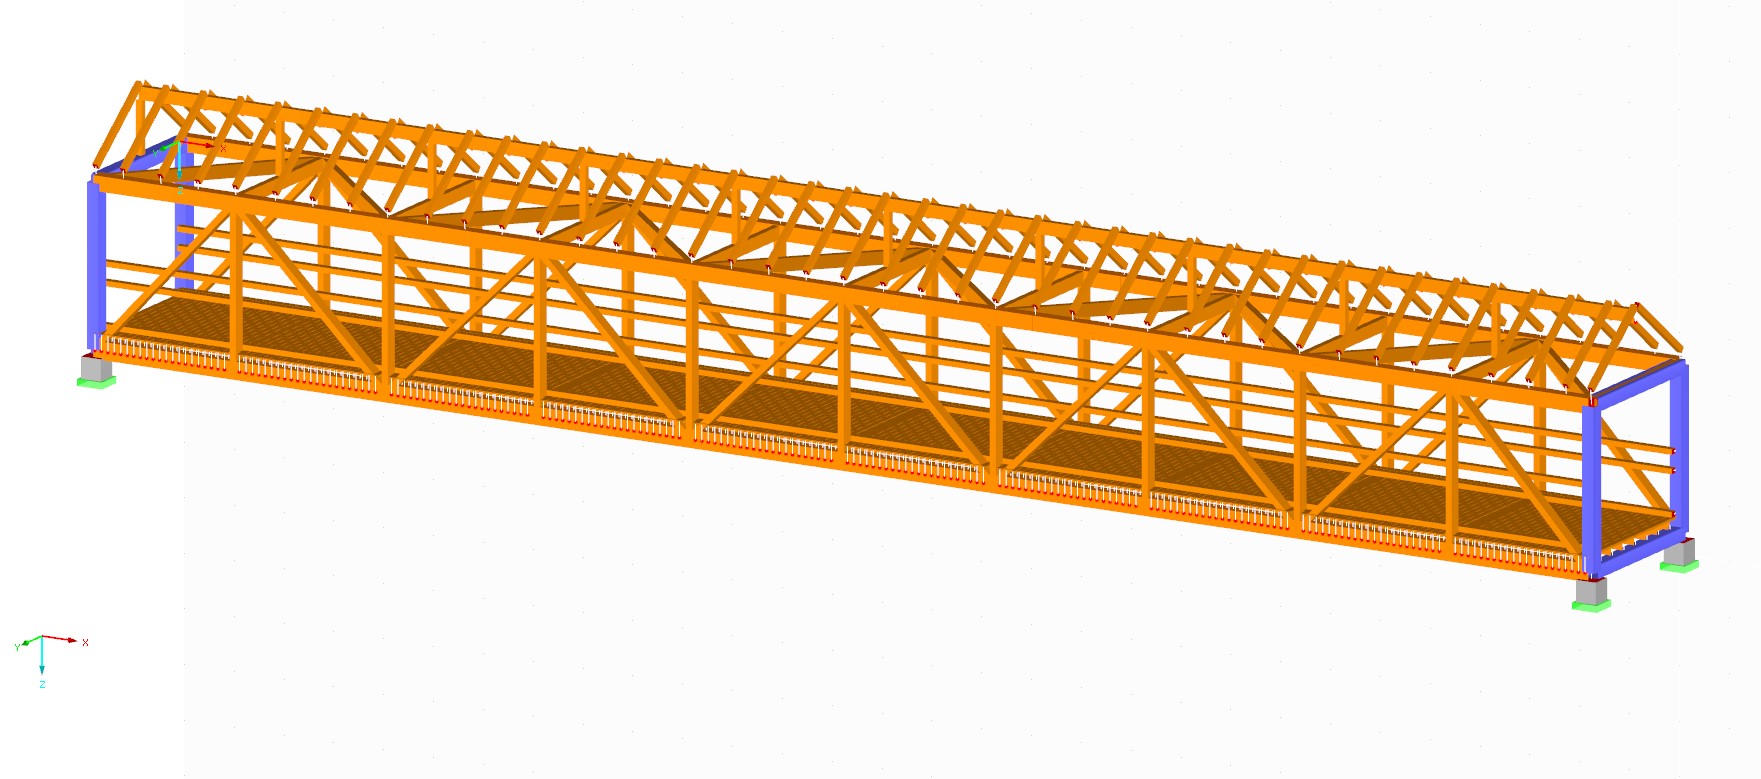 Sviluppo del programma EDP per l'analisi dei danni dei ponti di legno sulla base di misurazioni delle vibrazioni